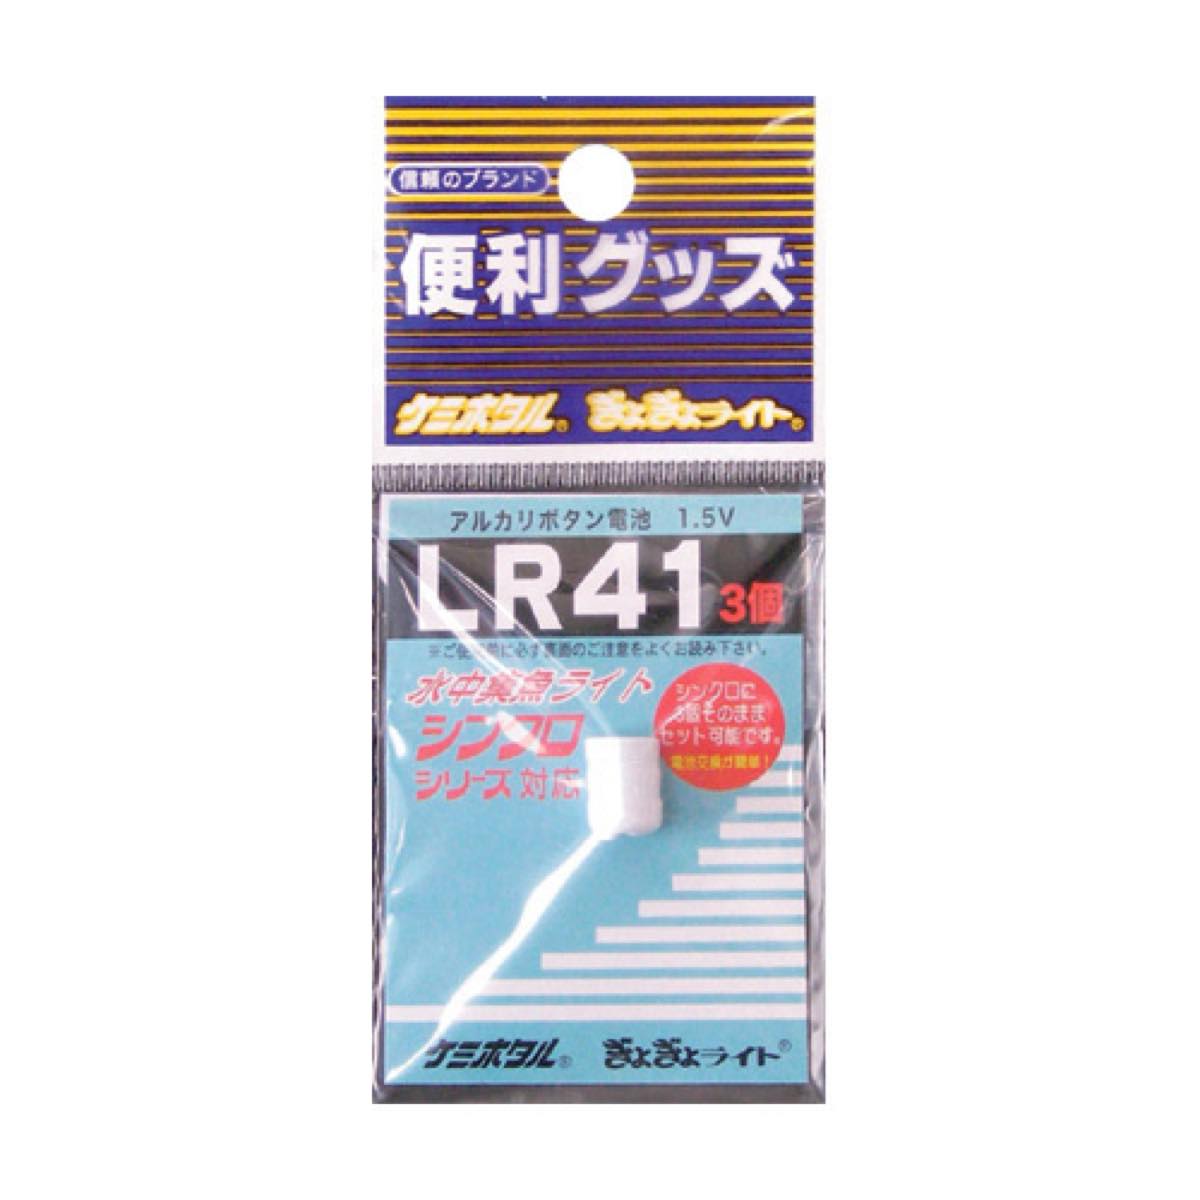 ルミカ(LUMICA) アルカリボタン電池 LR‐41(3個ユニット) ネコポス(メール便)対象商品